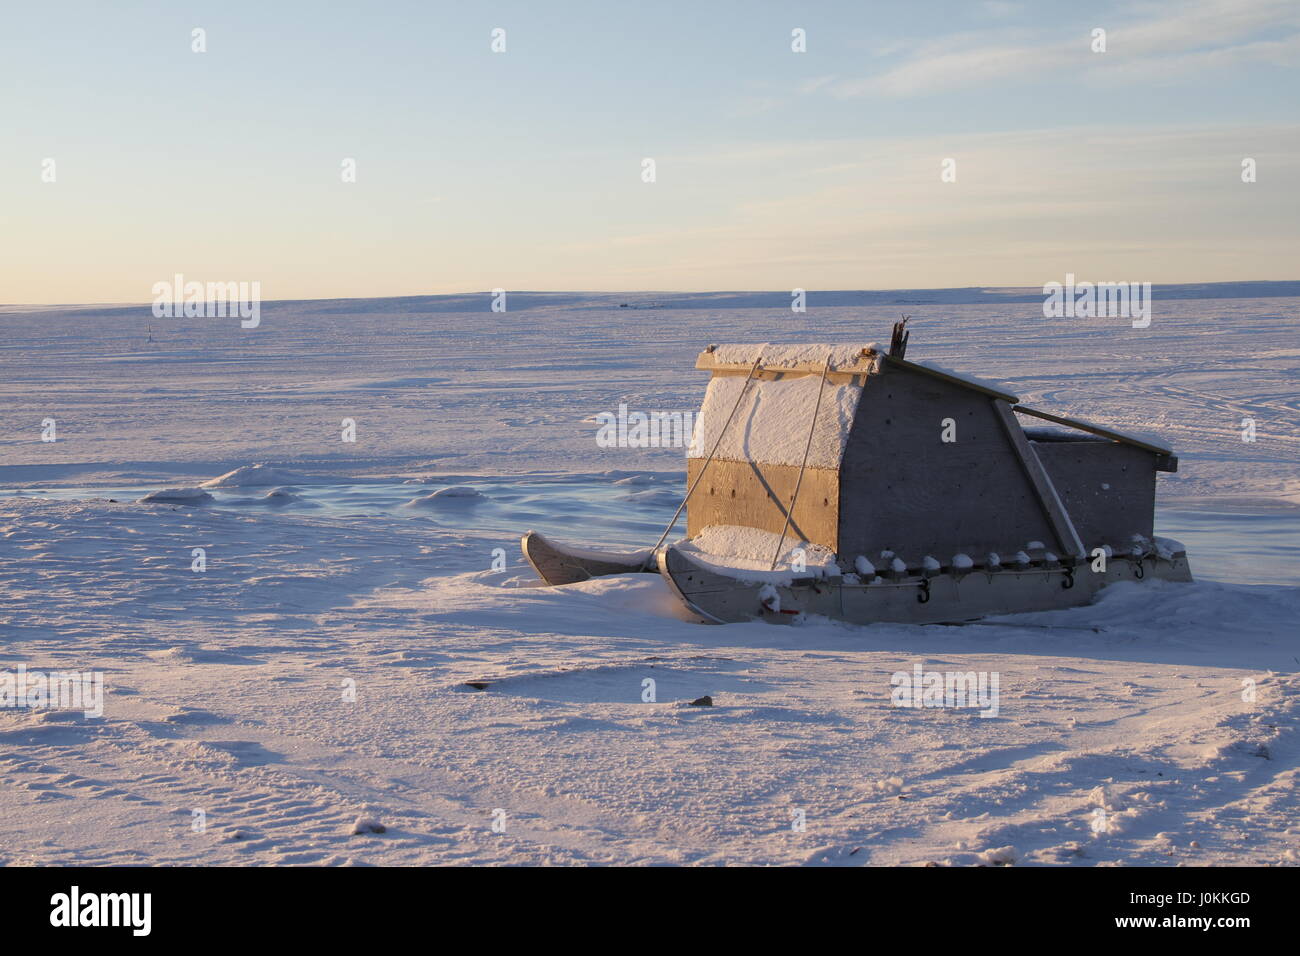 O Komatiq trineo Inuit en la comunidad de Cambridge Bay en el Artico Canadiense Foto de stock